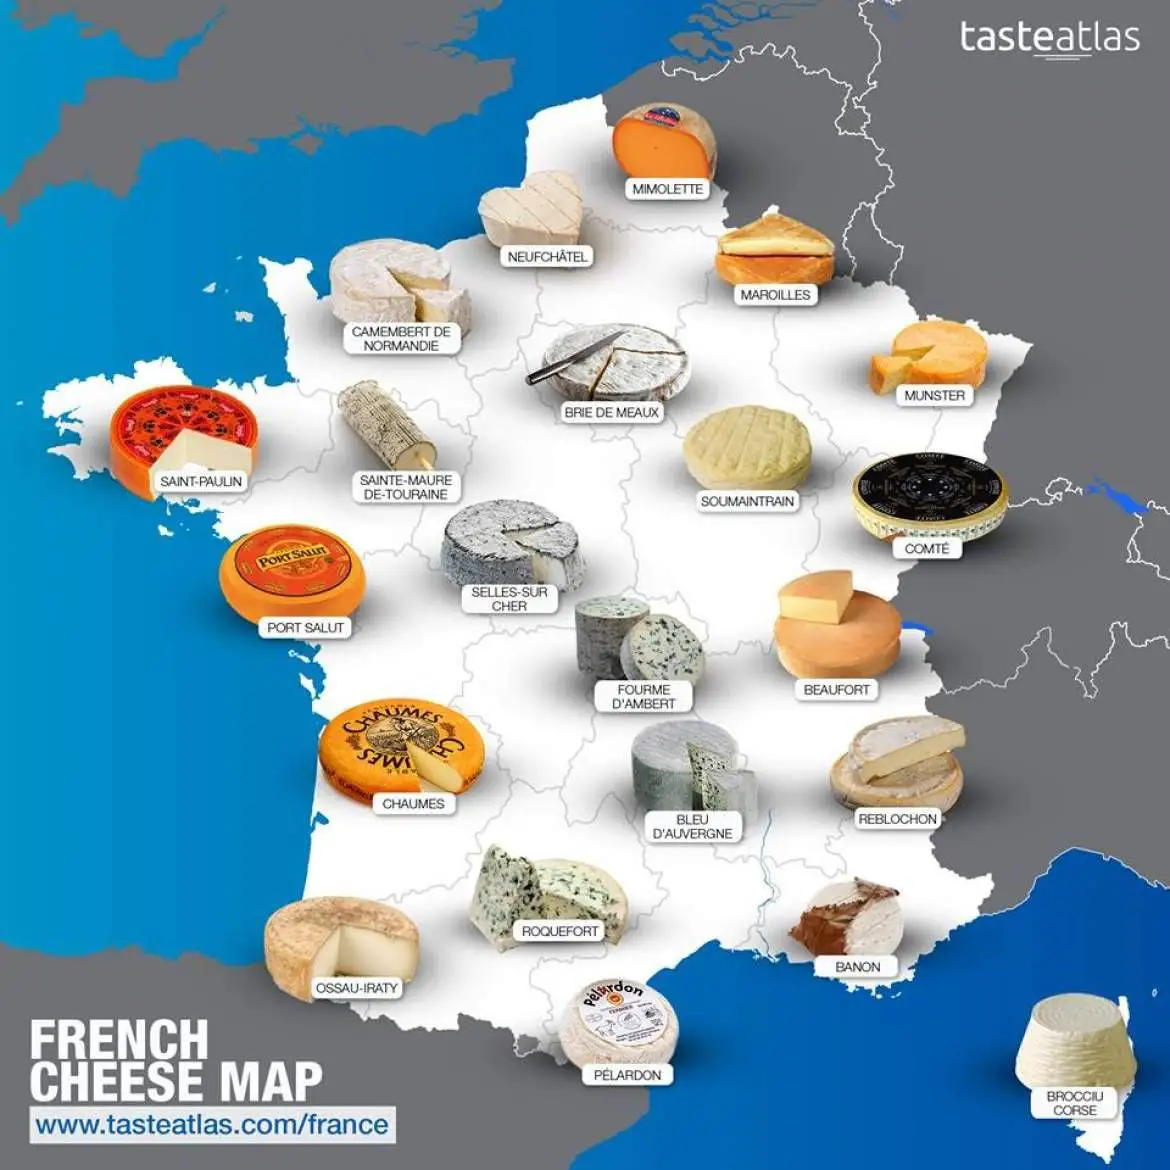 tasteatlas-cheese-map.jpg